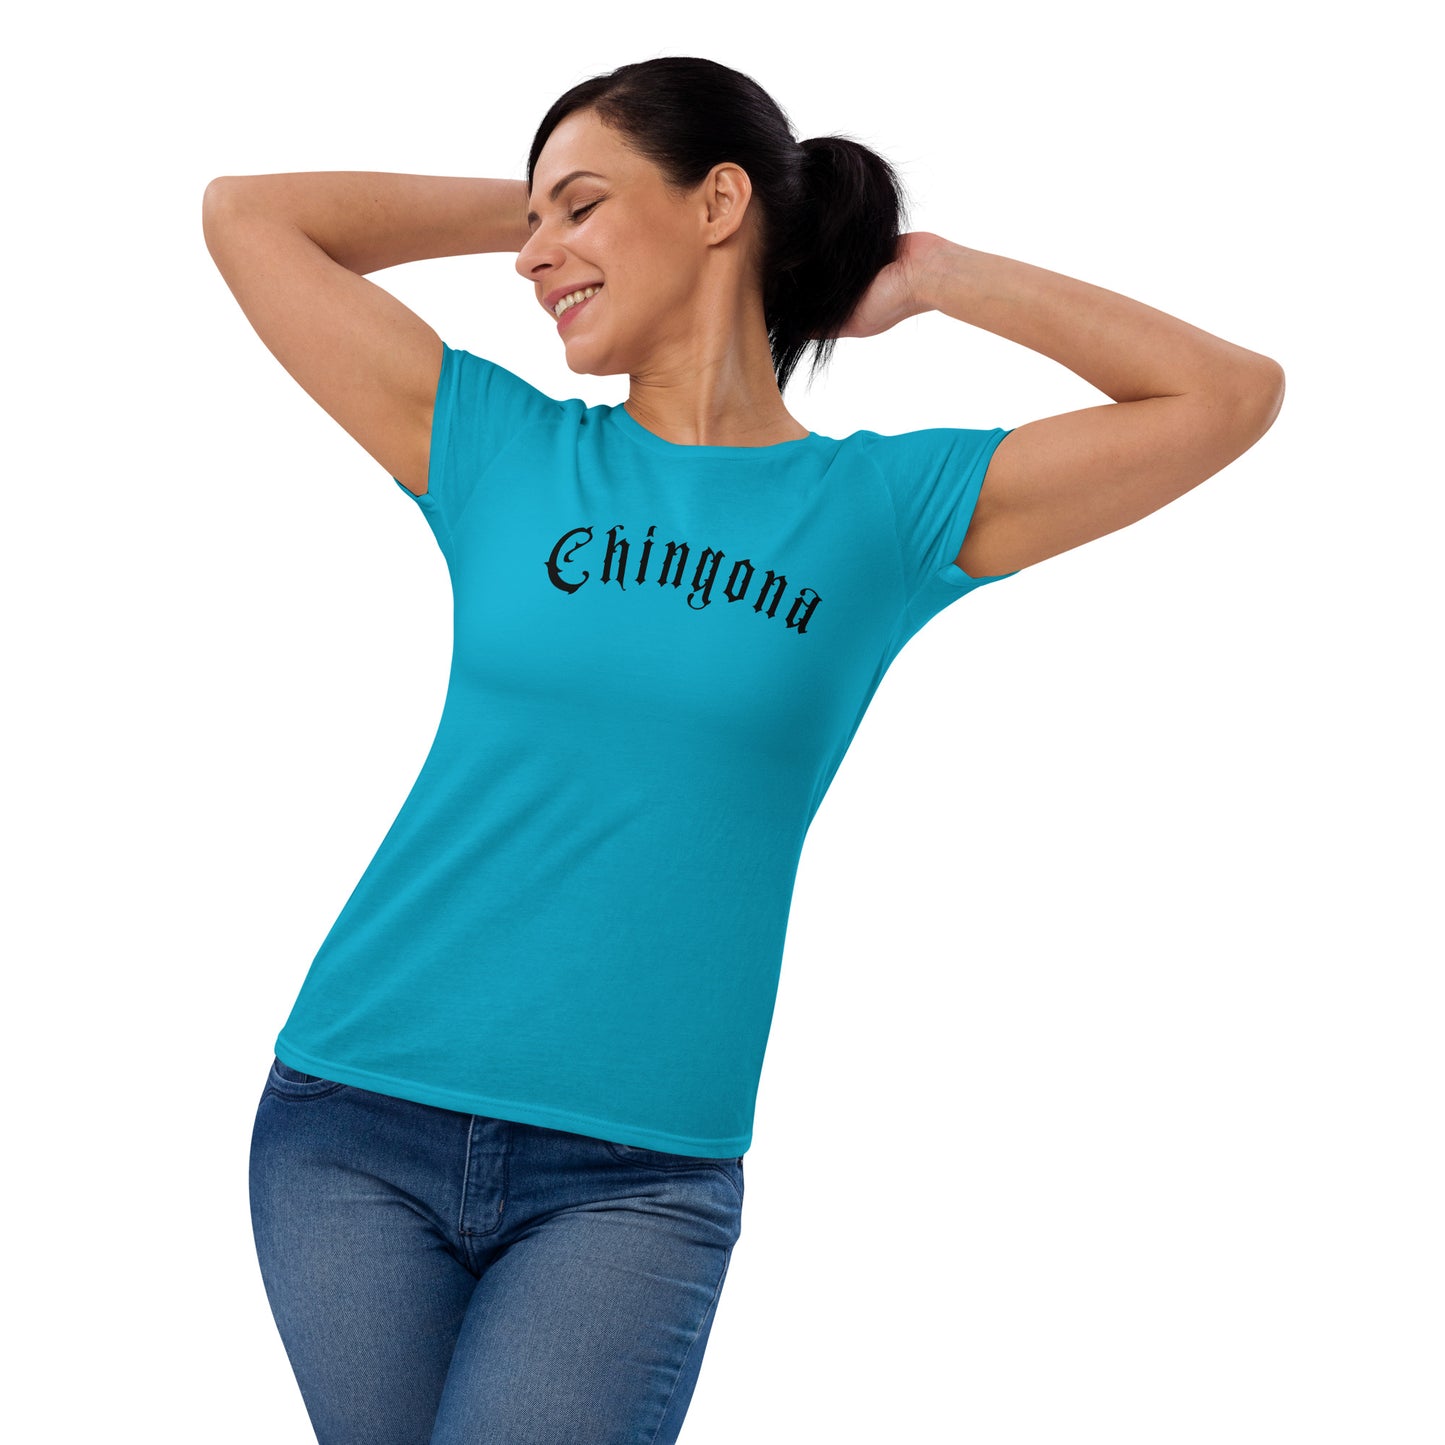 "Chingona" Women's short sleeve t-shirt